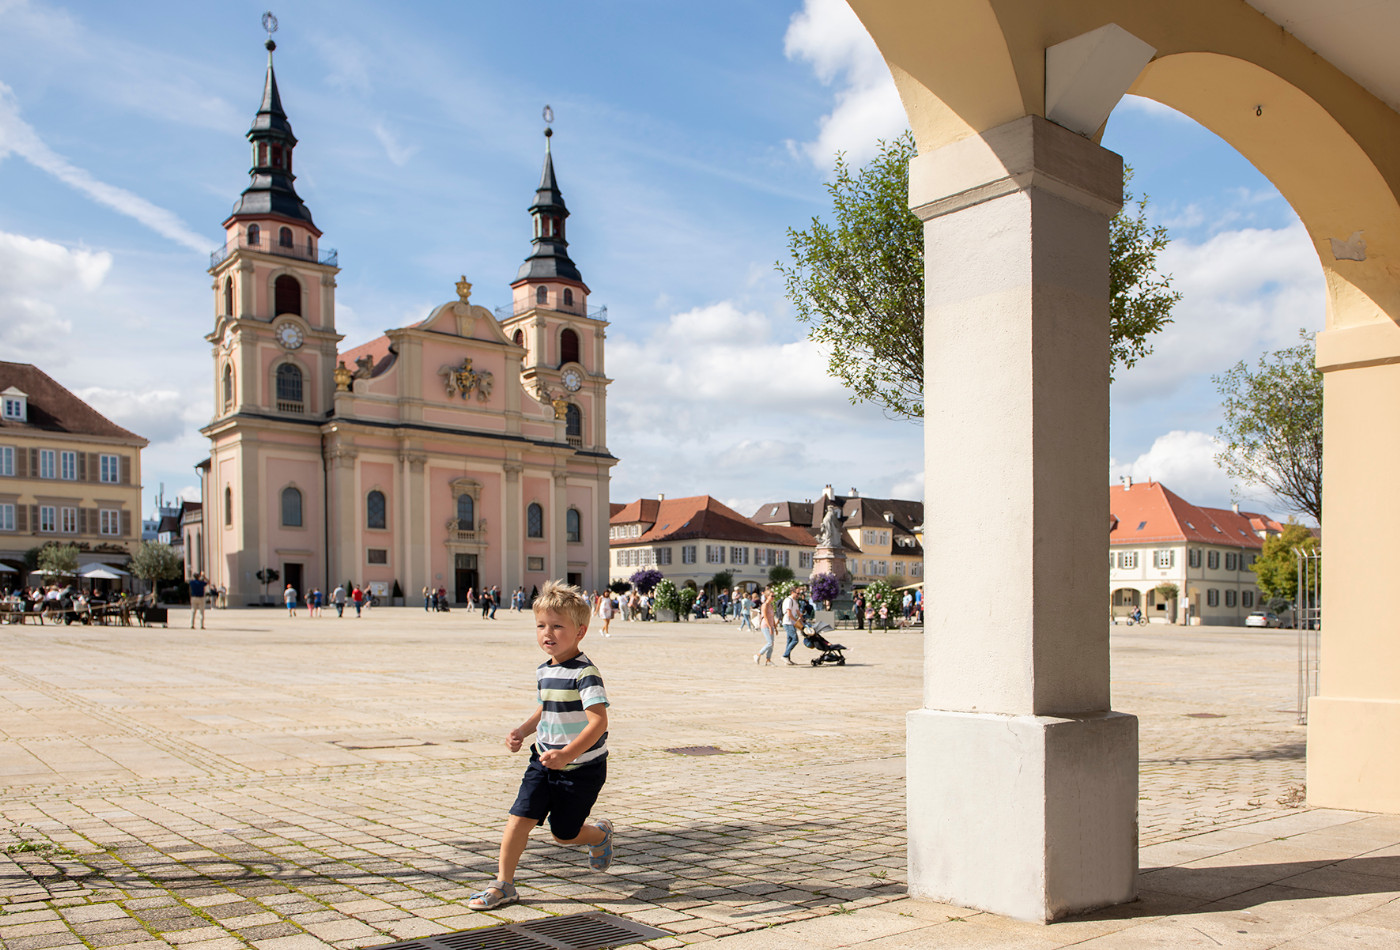 Kind läuft zwischen Arkaden am Marktplatz umher. Die evangelische Kirche im Hintergrund.